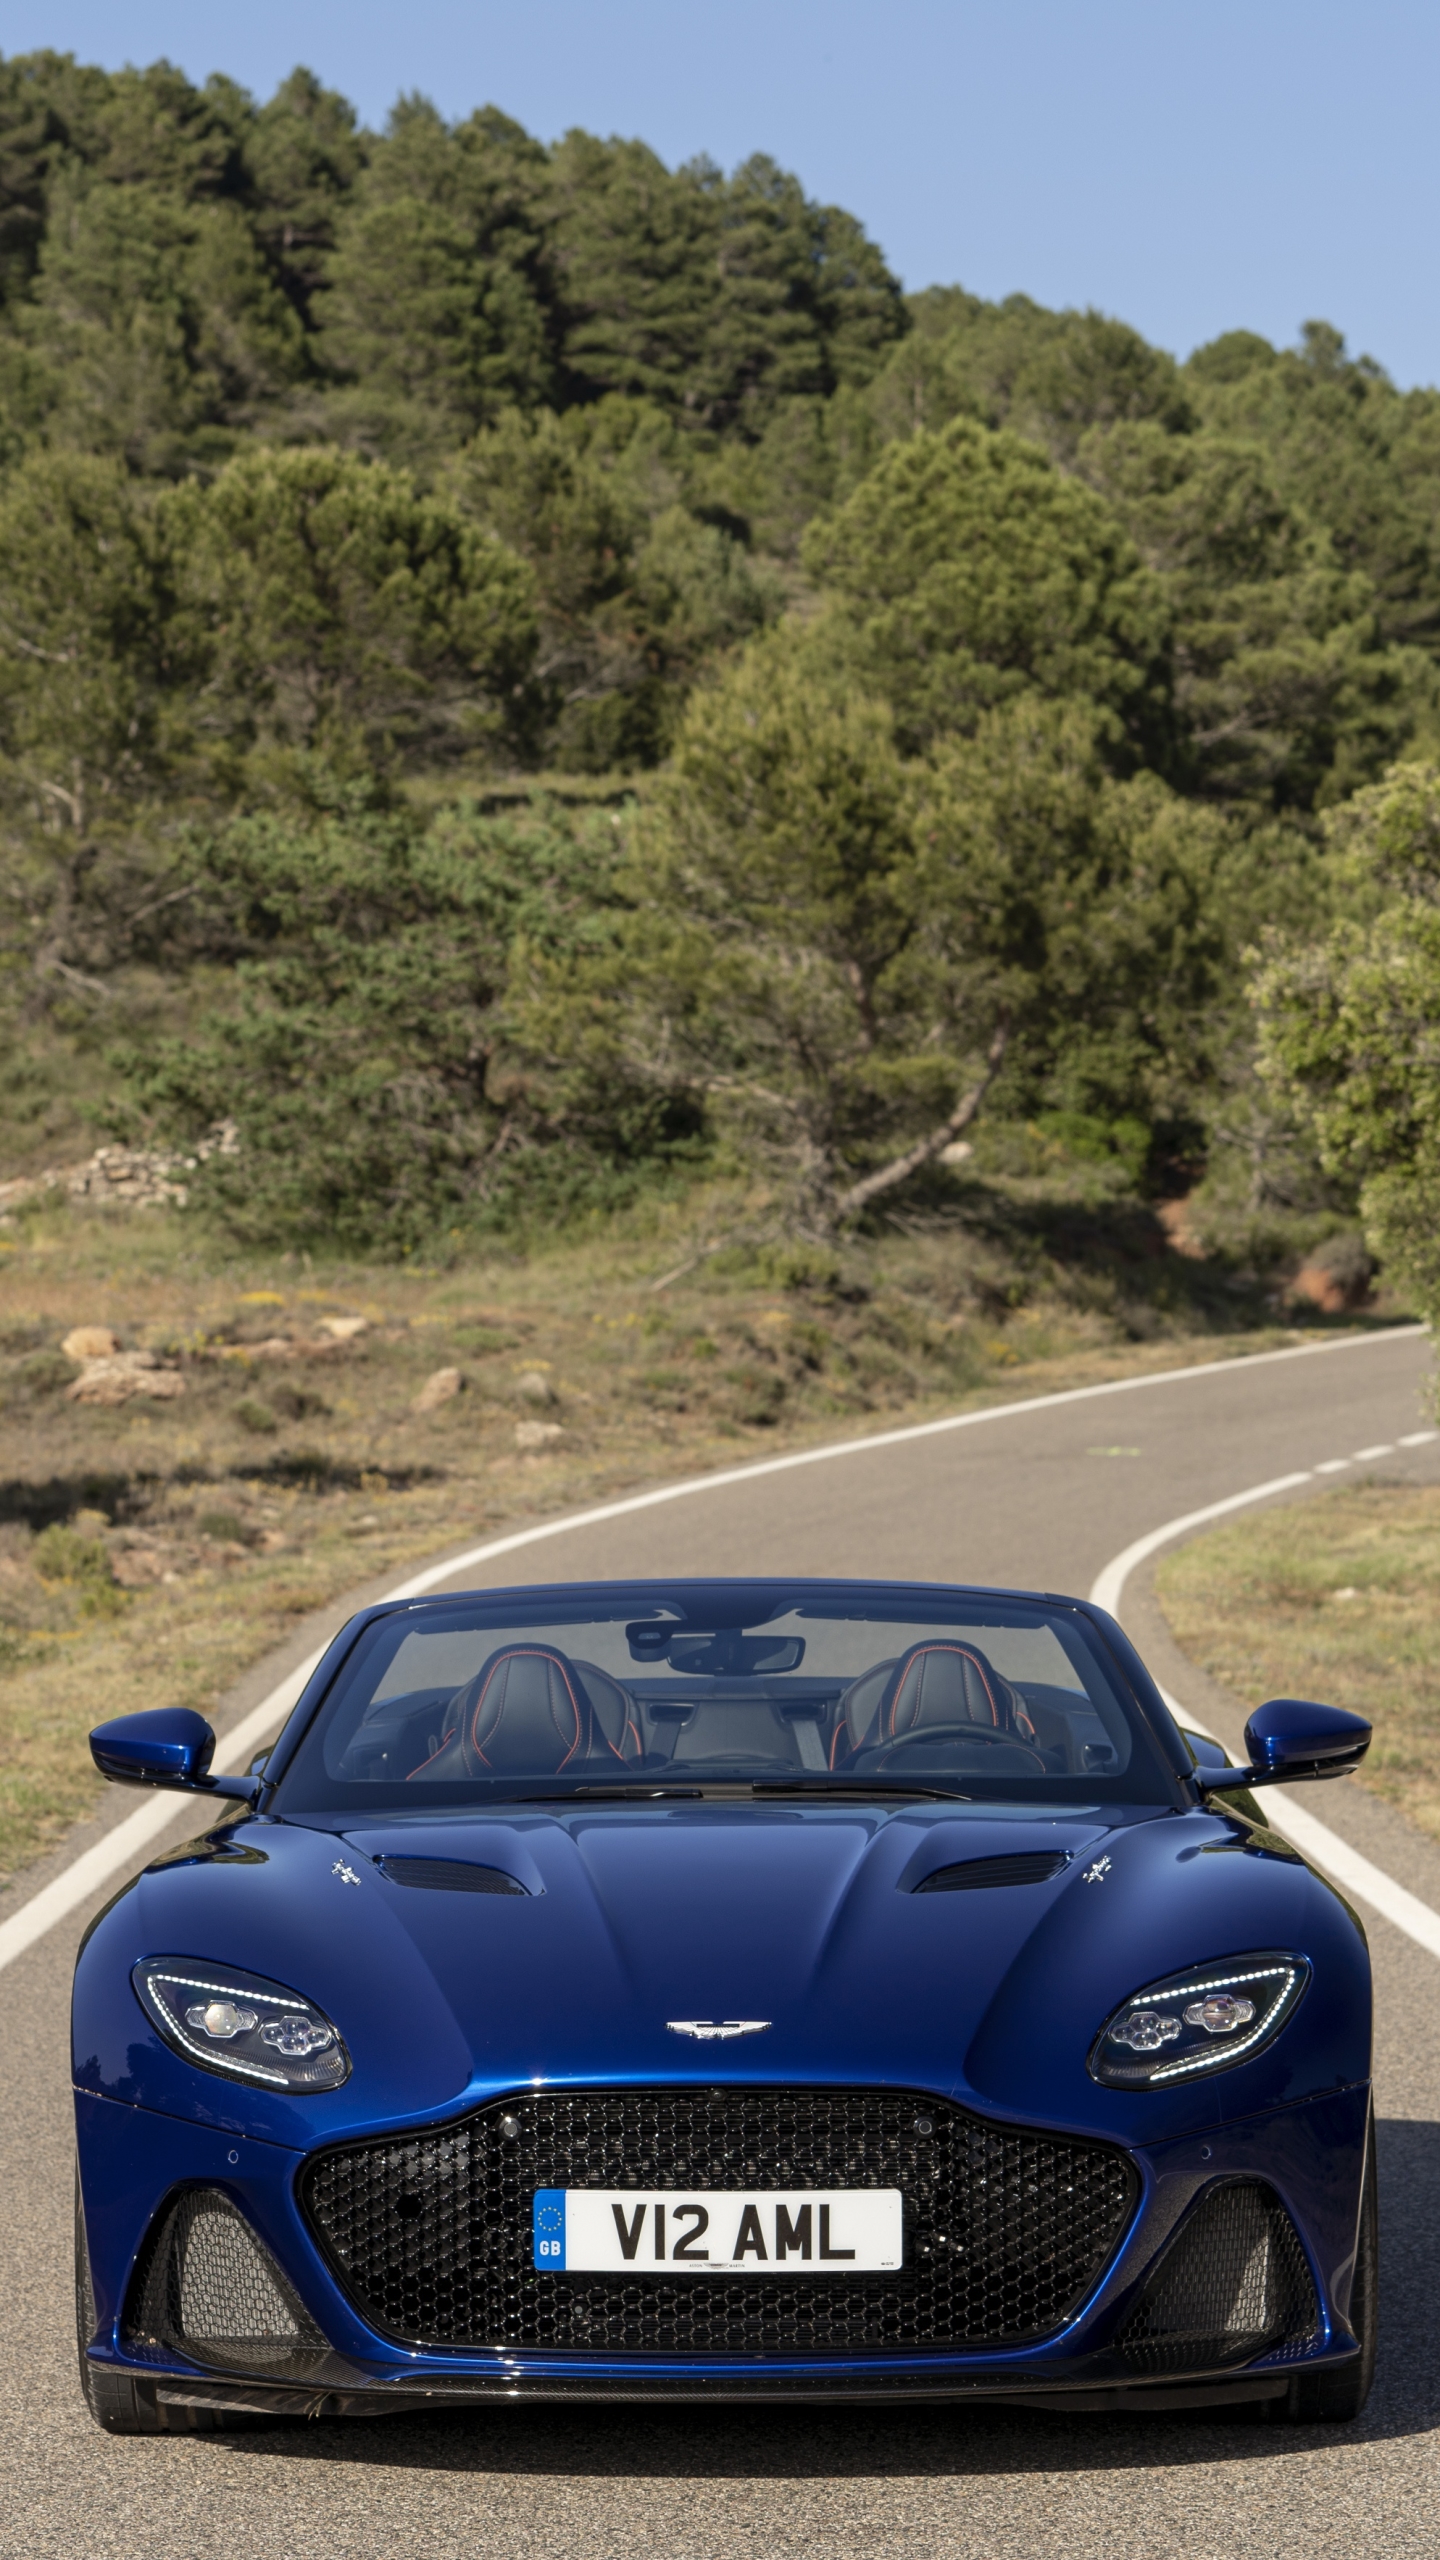 Descarga gratuita de fondo de pantalla para móvil de Aston Martin, Coche, Vehículo, Vehículos, Aston Martin Dbs Superleggera.